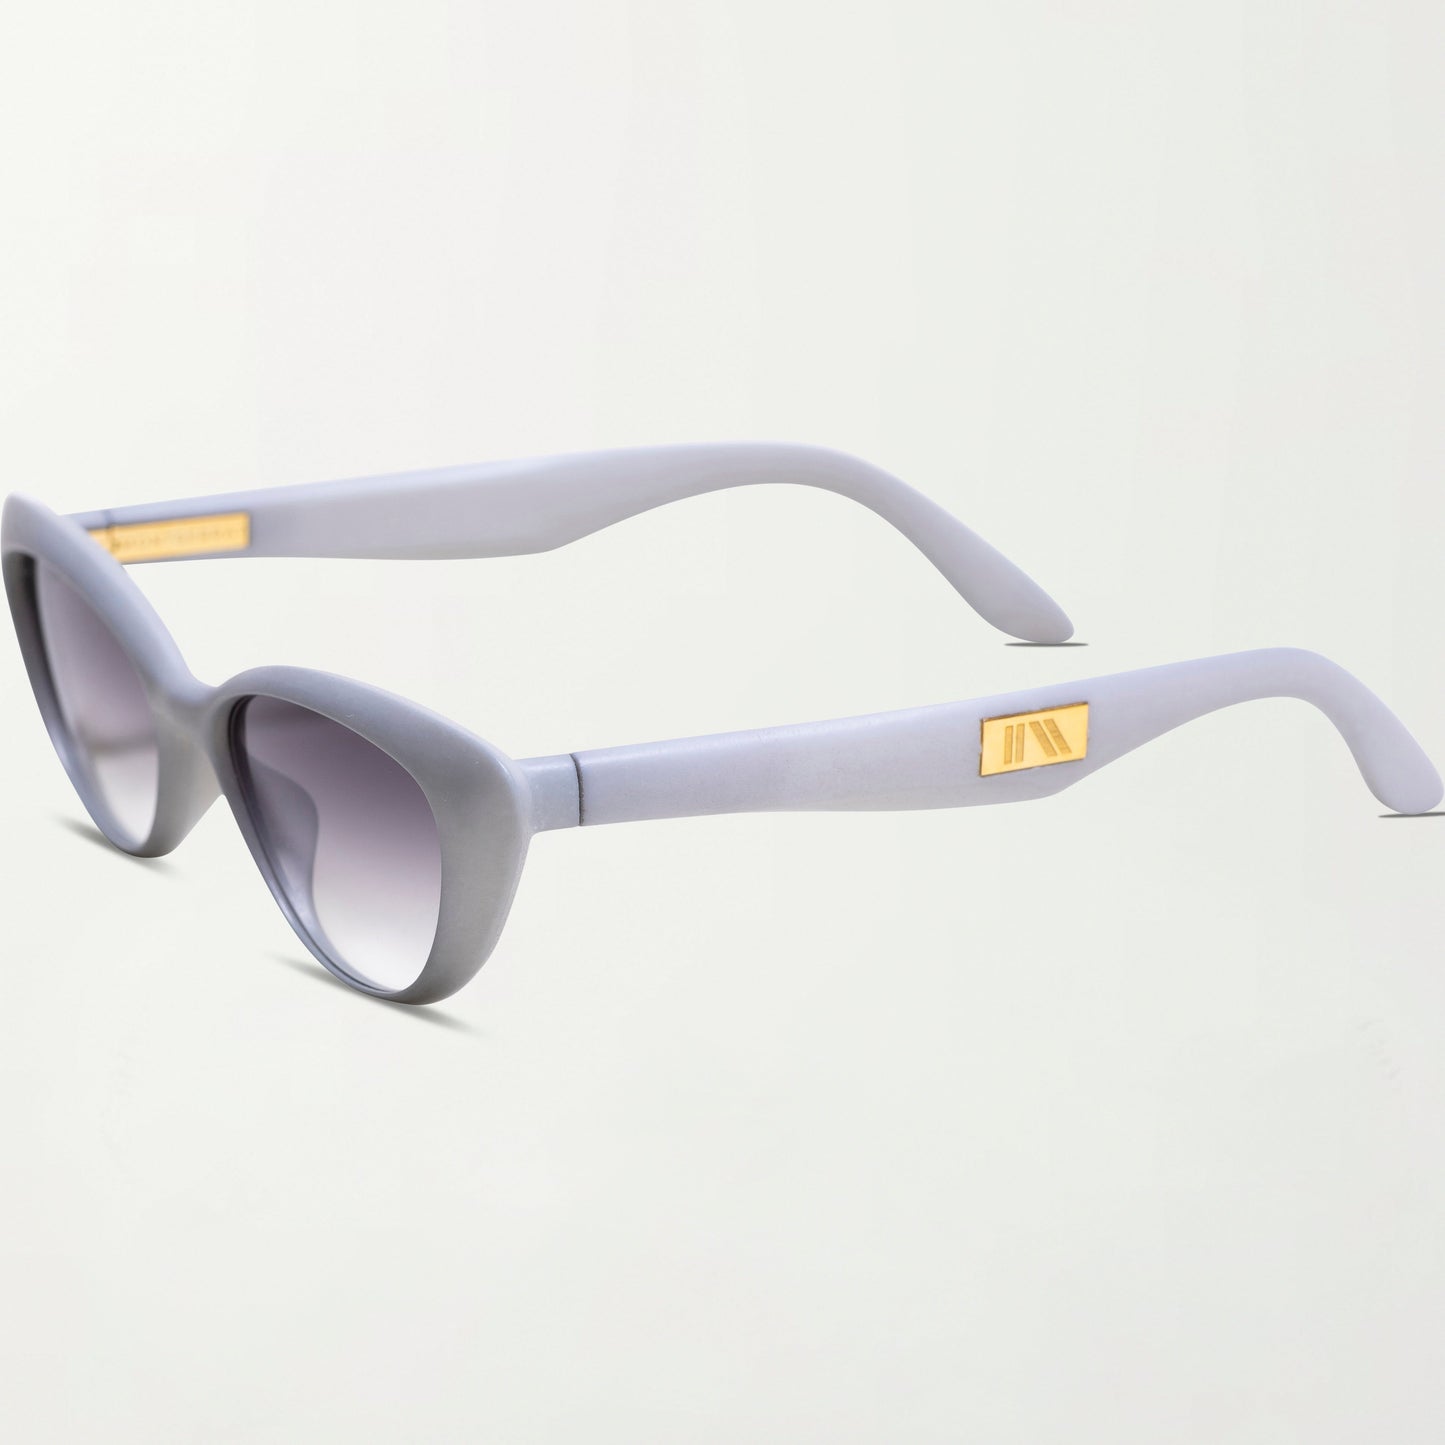 The Capri Sunglasses in Smoke